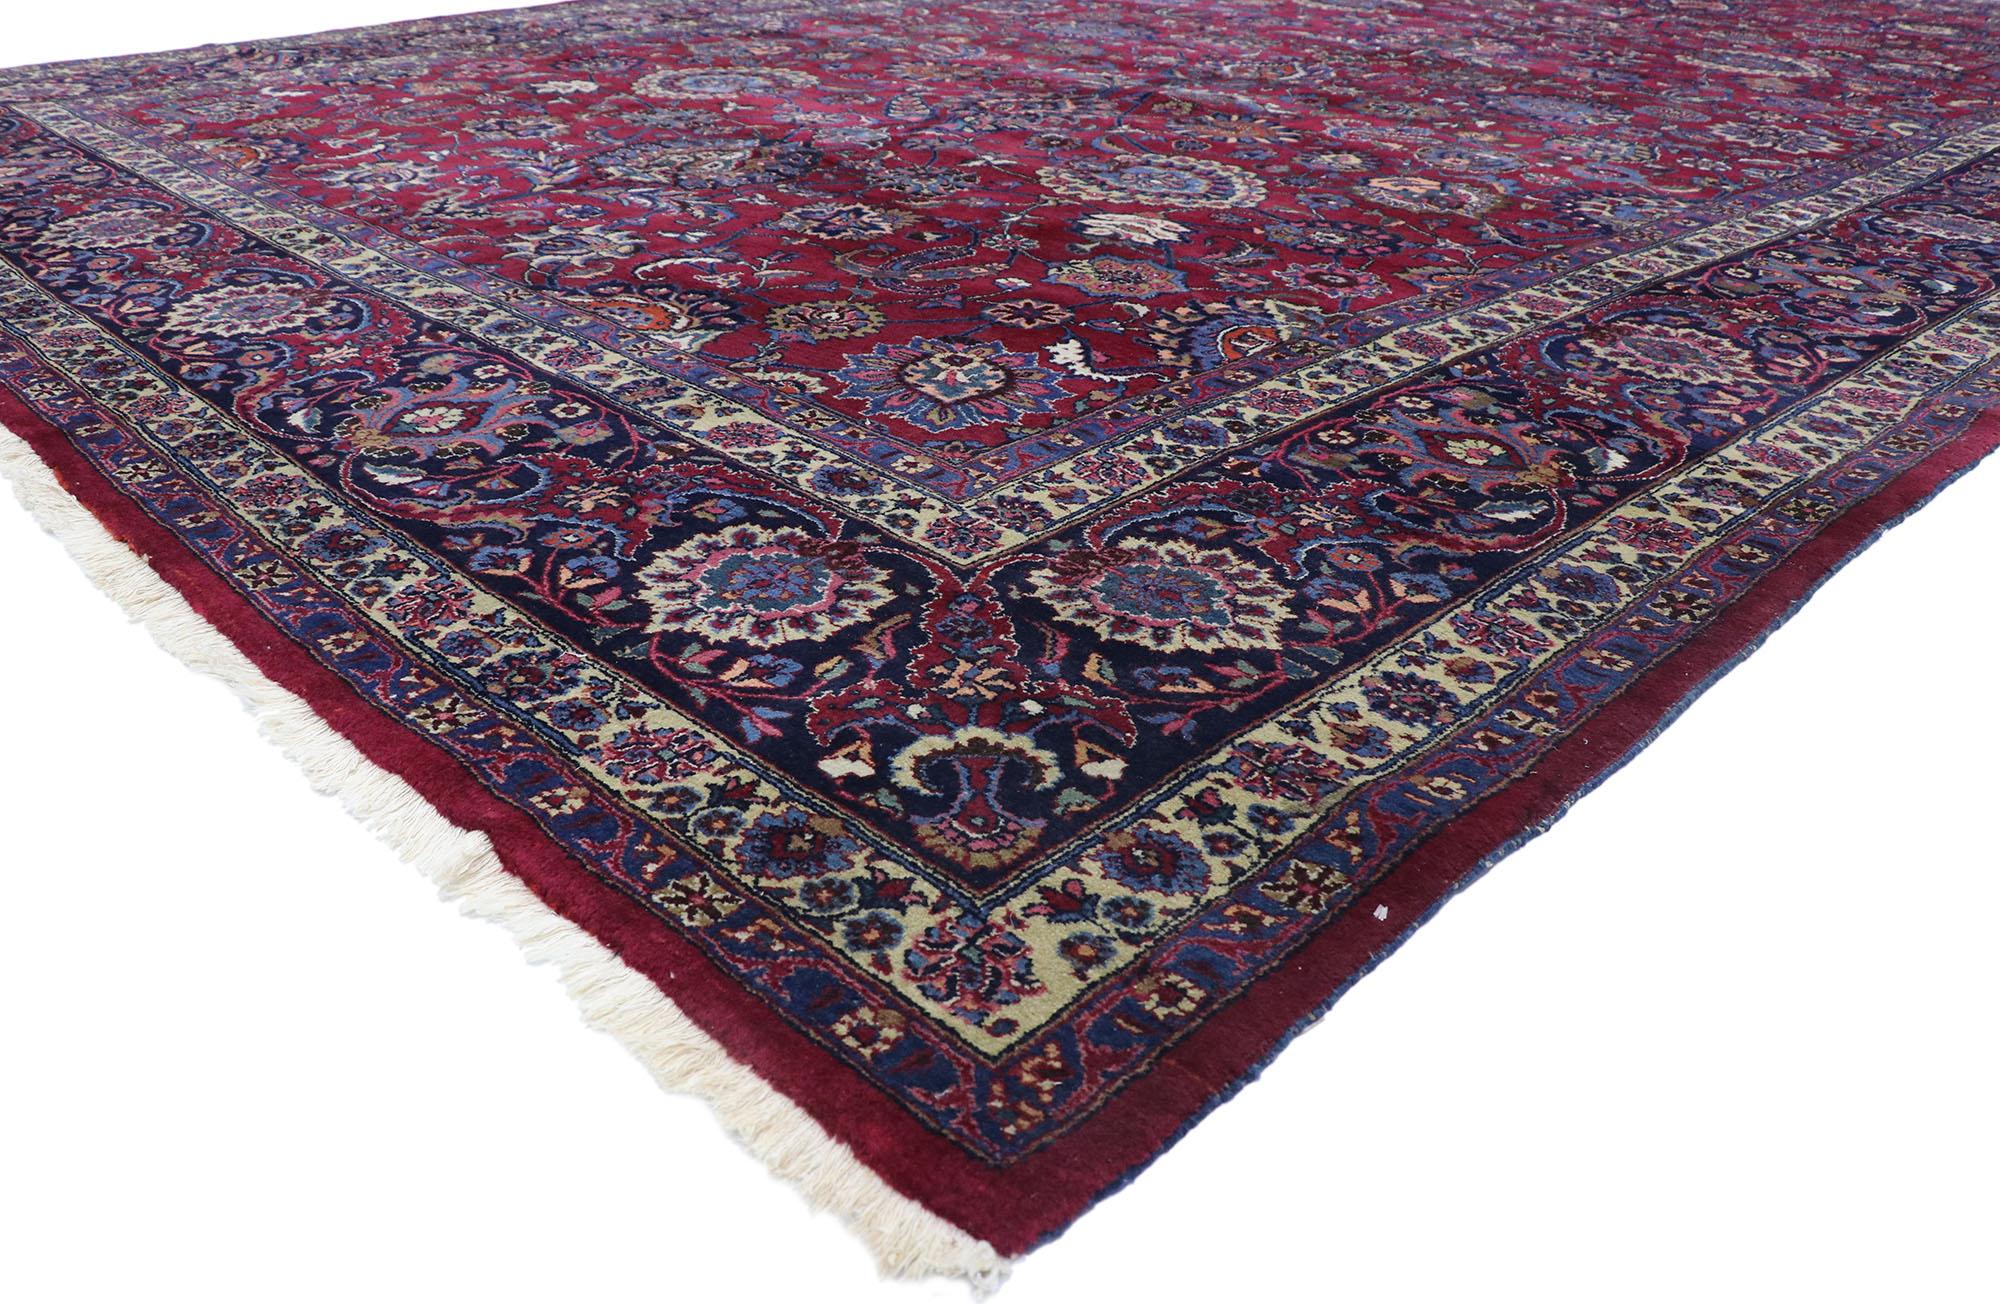 78066 tapis persan antique Mashhad avec style victorien élisabéthain 12'00 x 19'07. Avec sa beauté séduisante et ses riches tons de bijoux, ce tapis persan antique Mashhad en laine noué à la main est prêt à impressionner. Le champ bordeaux abrasé